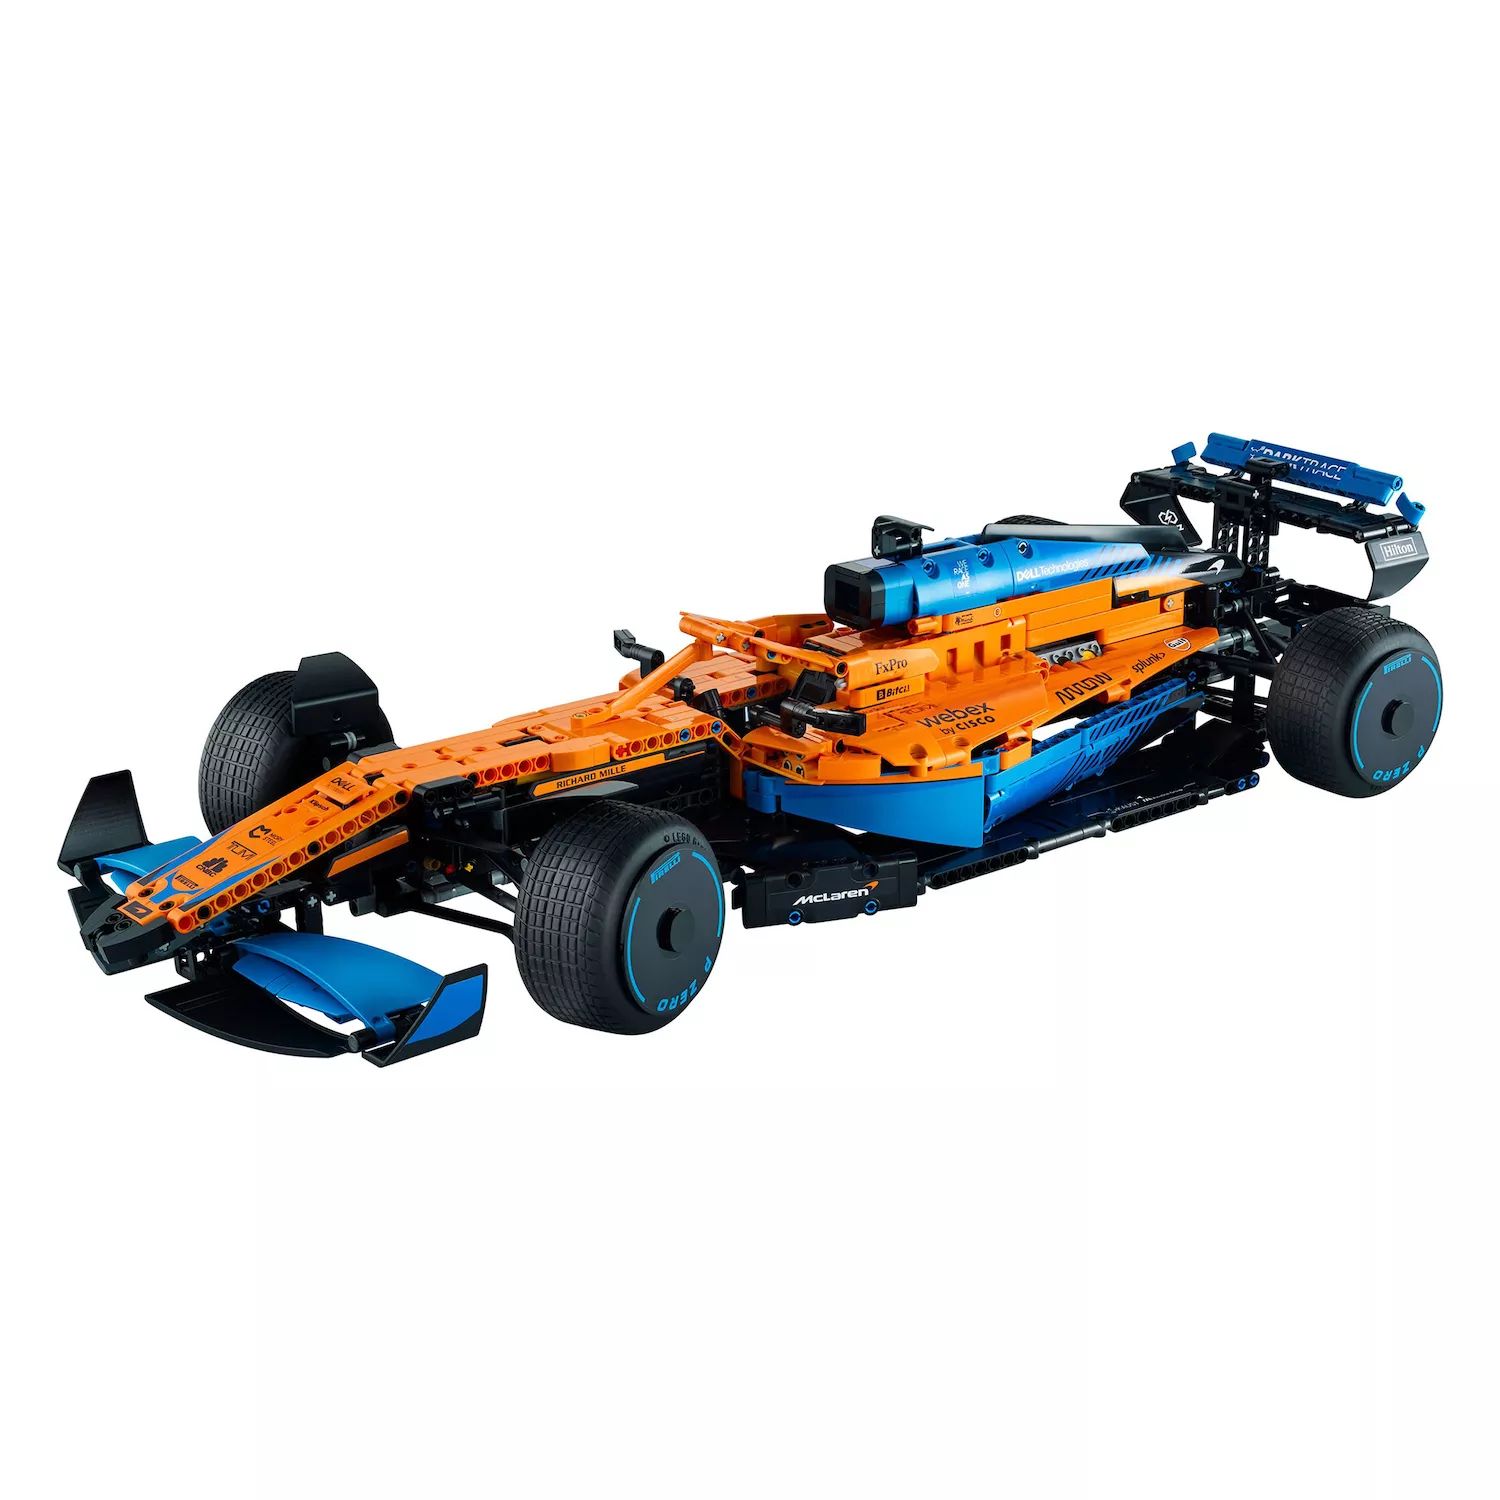 Комплект для сборки модели LEGO Technic McLaren Formula 1 Race Car 42141 (1432 детали) LEGO конструктор lego technic 42141 гоночный автомобиль mclaren formula 1 1432 дет